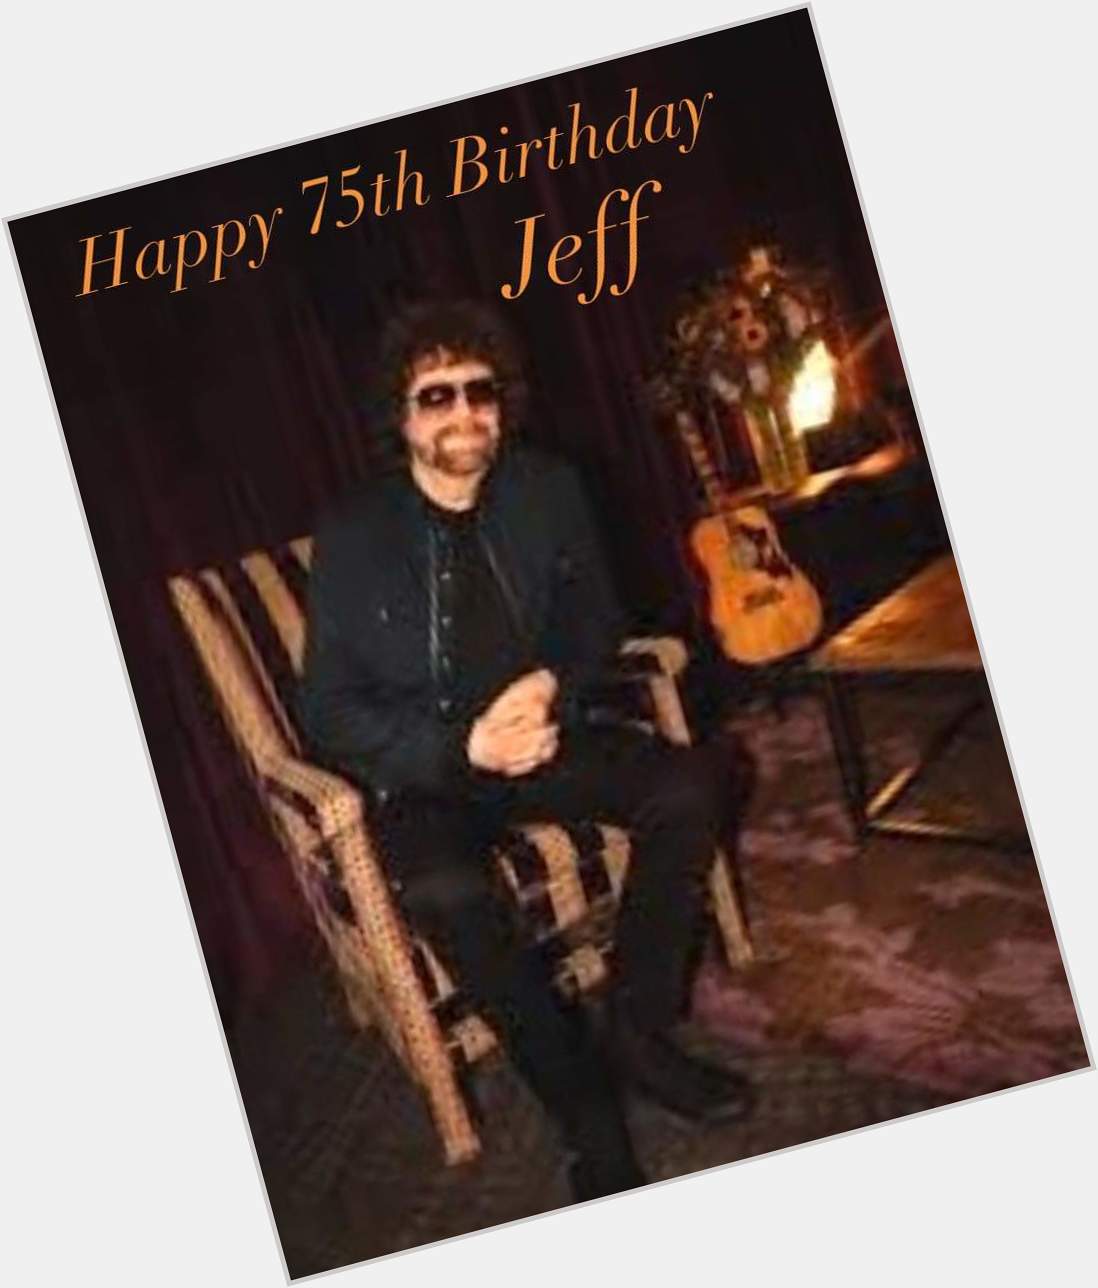 Happy Birthday Jeff Lynne! 